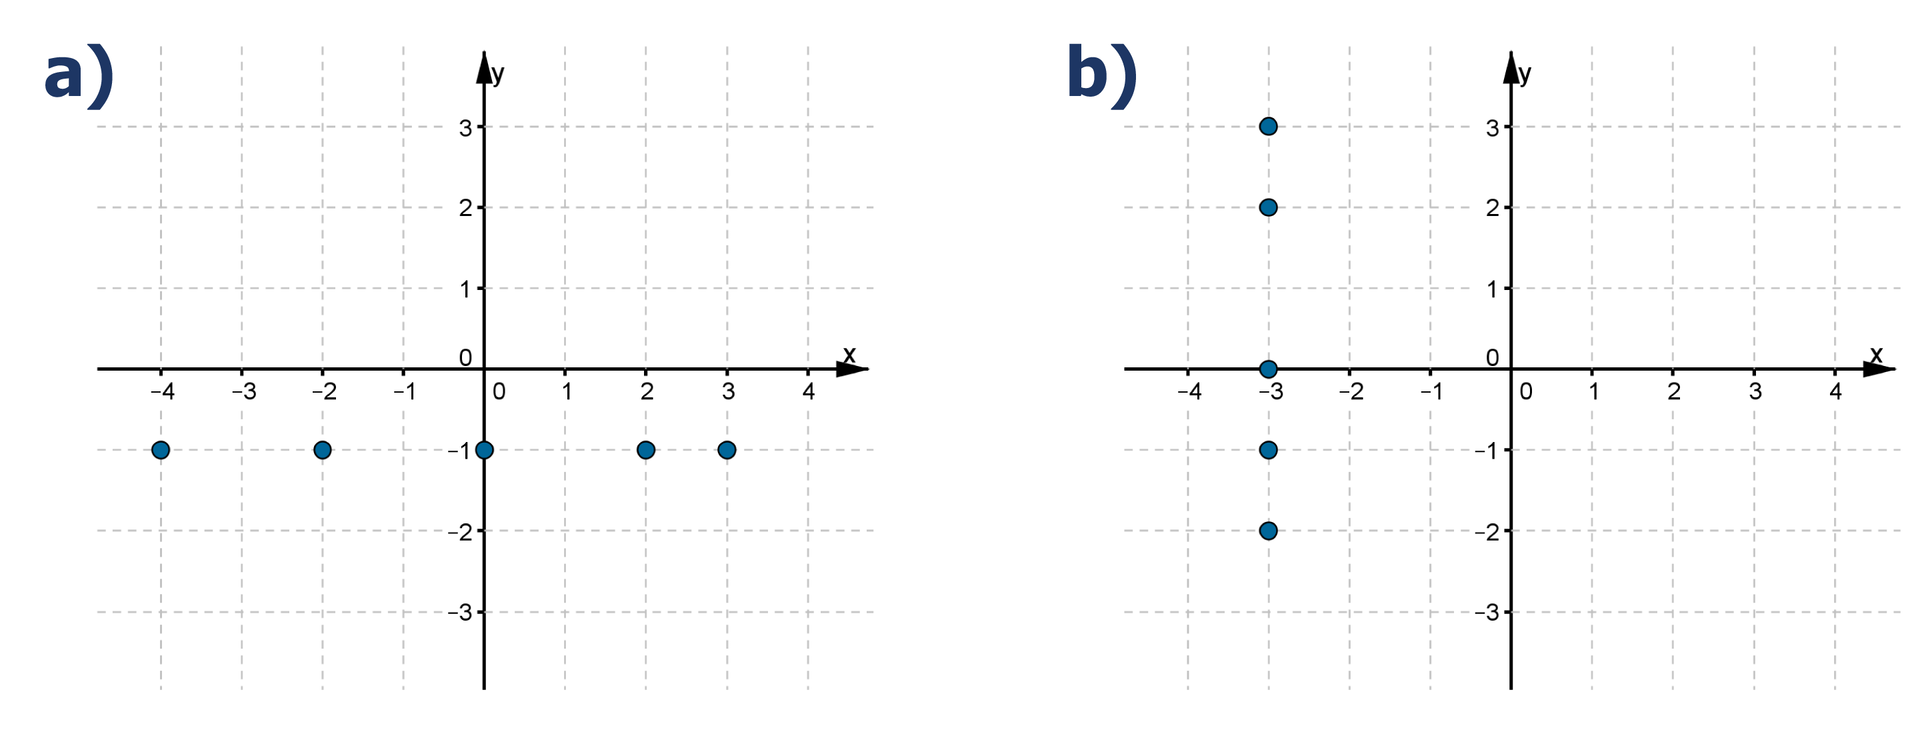 Rysunki dwóch układów współrzędnych. Na pierwszym rysunku zaznaczone punkty o współrzędnych (-4, -1), (-2, -1), (0, -1), (2, -1), (3, -1). Na drugim rysunku zaznaczone punkty o współrzędnych (-3, 3), (-3, 2), (-3, 0), (-3, -1), (-3, -2).